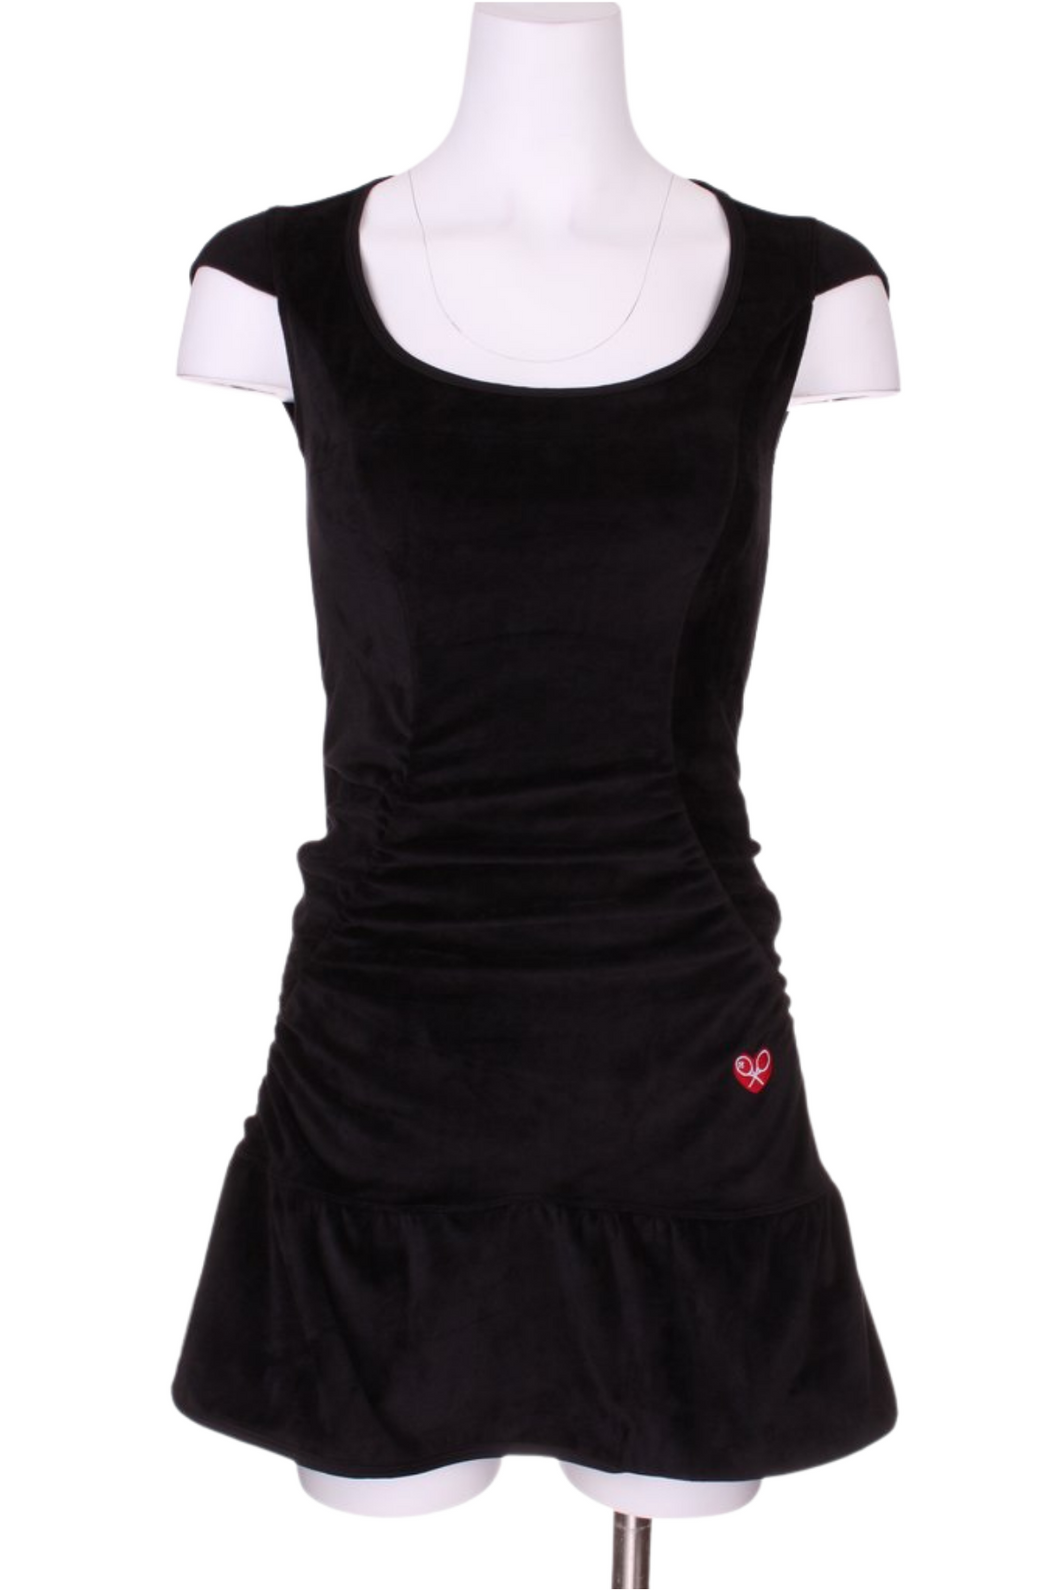 Solid Black Velvet Monroe Tennis Dress - I LOVE MY DOUBLES PARTNER!!!